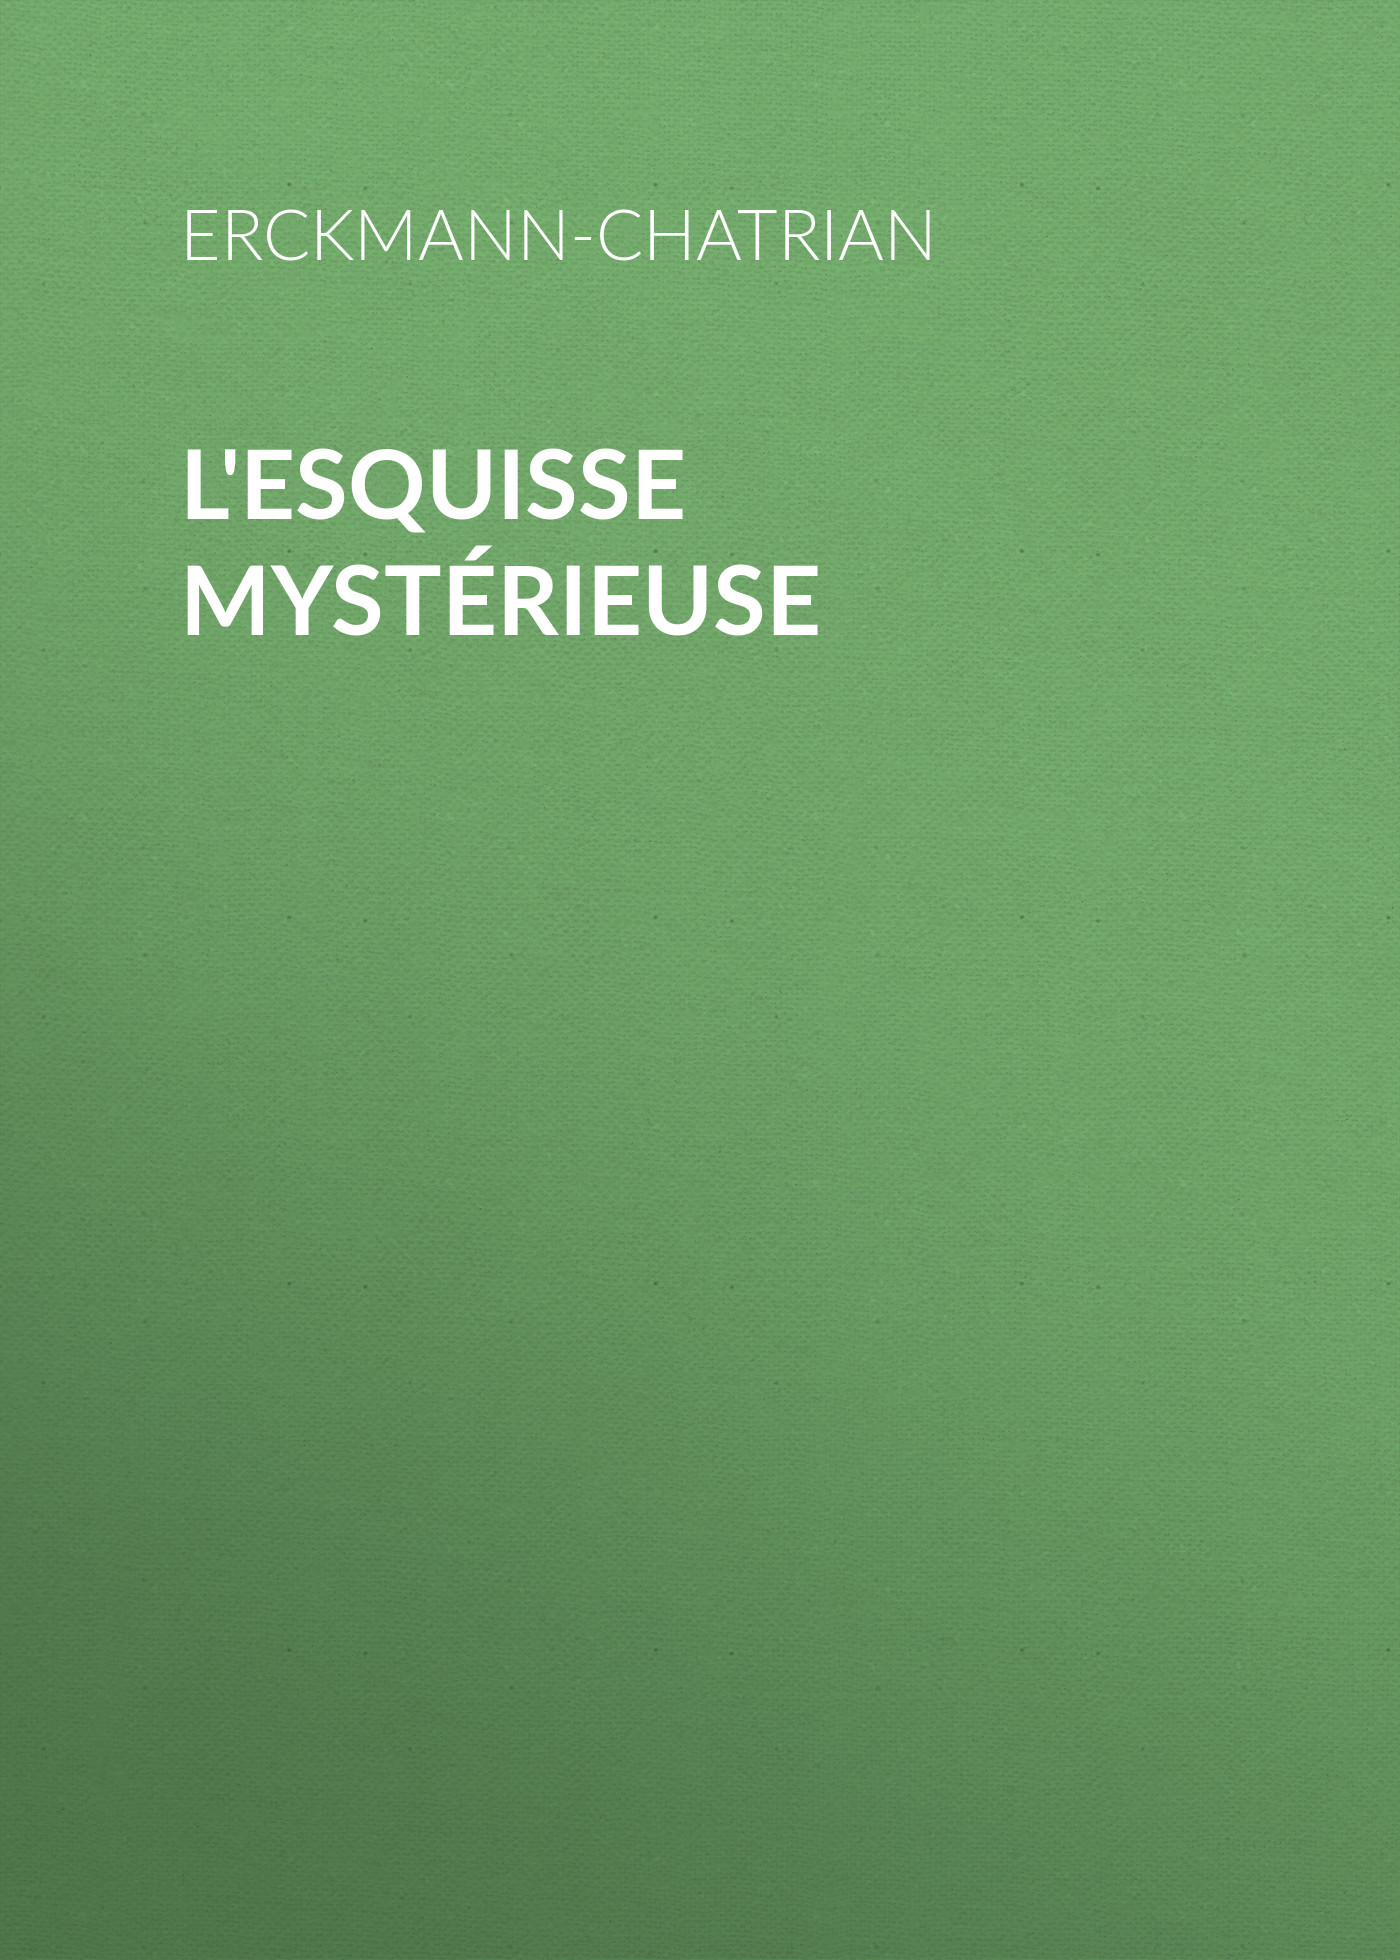 Книга L'esquisse mystérieuse из серии , созданная  Erckmann-Chatrian, может относится к жанру Зарубежная старинная литература, Зарубежная классика, Рассказы. Стоимость электронной книги L'esquisse mystérieuse с идентификатором 24714353 составляет 0 руб.